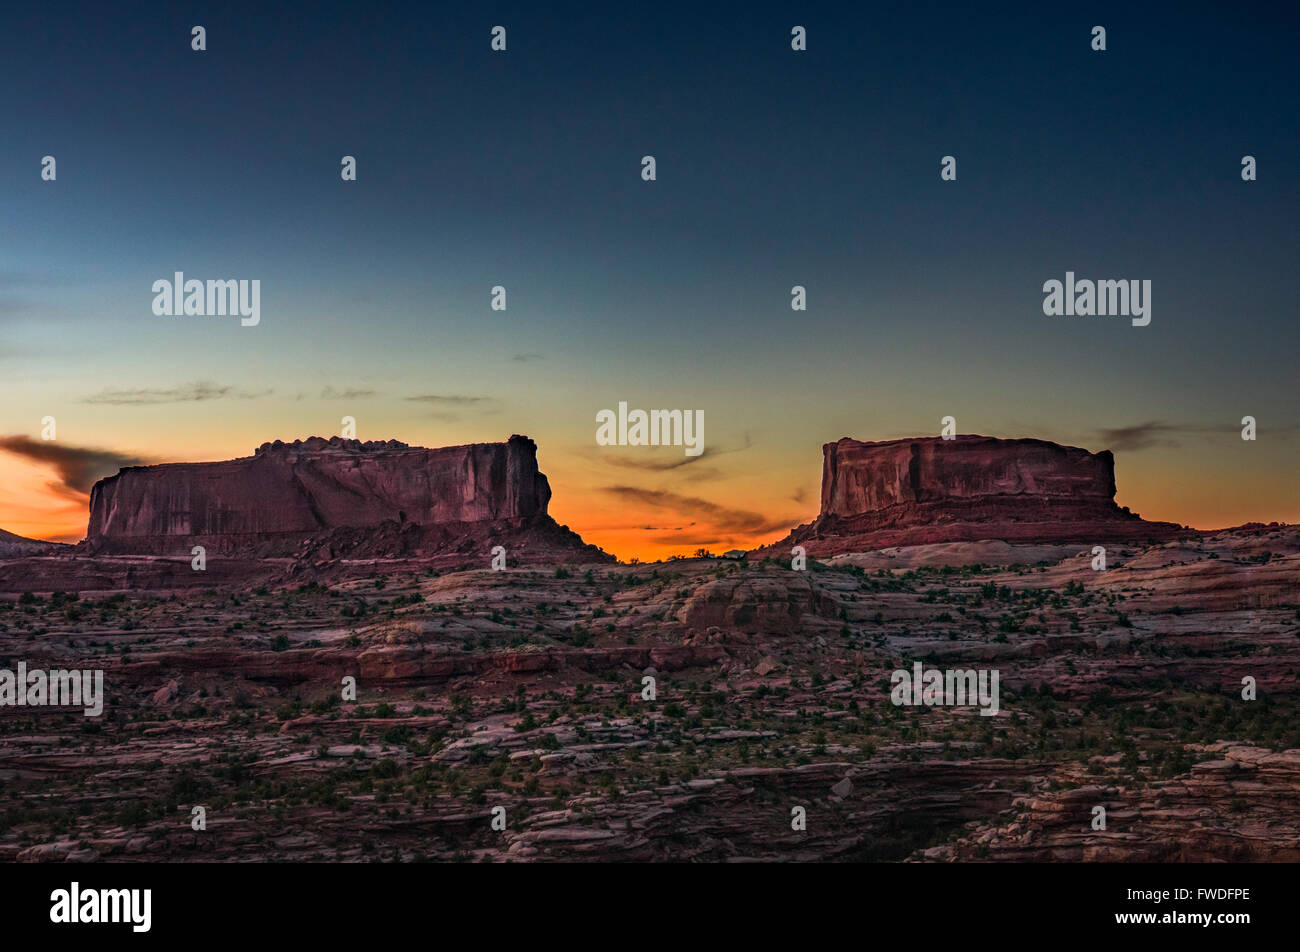 Il sole tramonta dietro il gigante formazioni rocciose, Monitor e Merrimac buttes trovata nel midwest America, Utah. Foto Stock